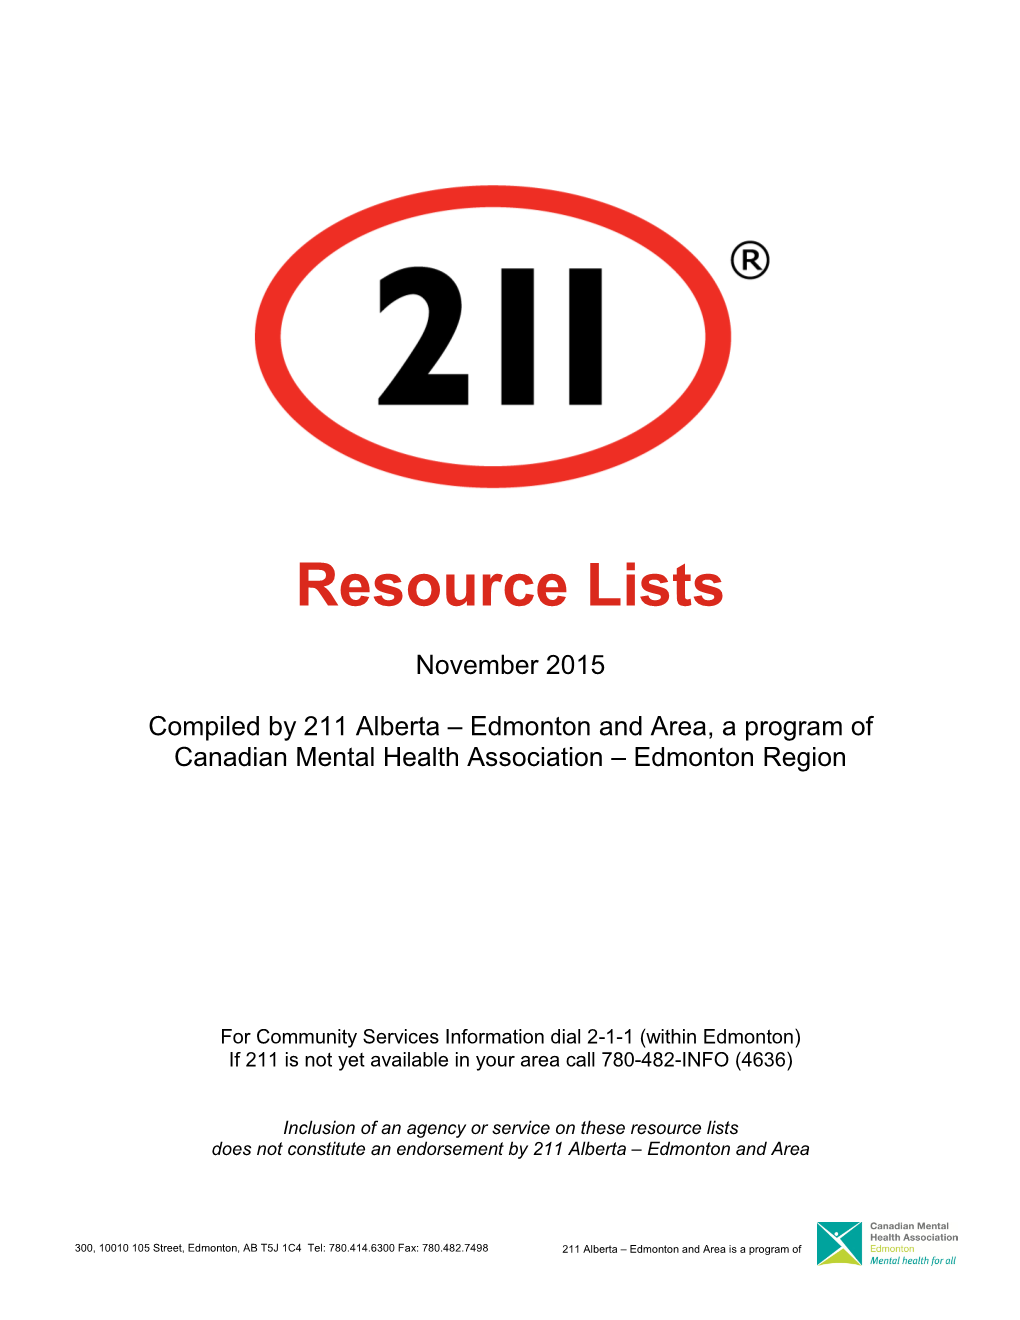 211 Resources List